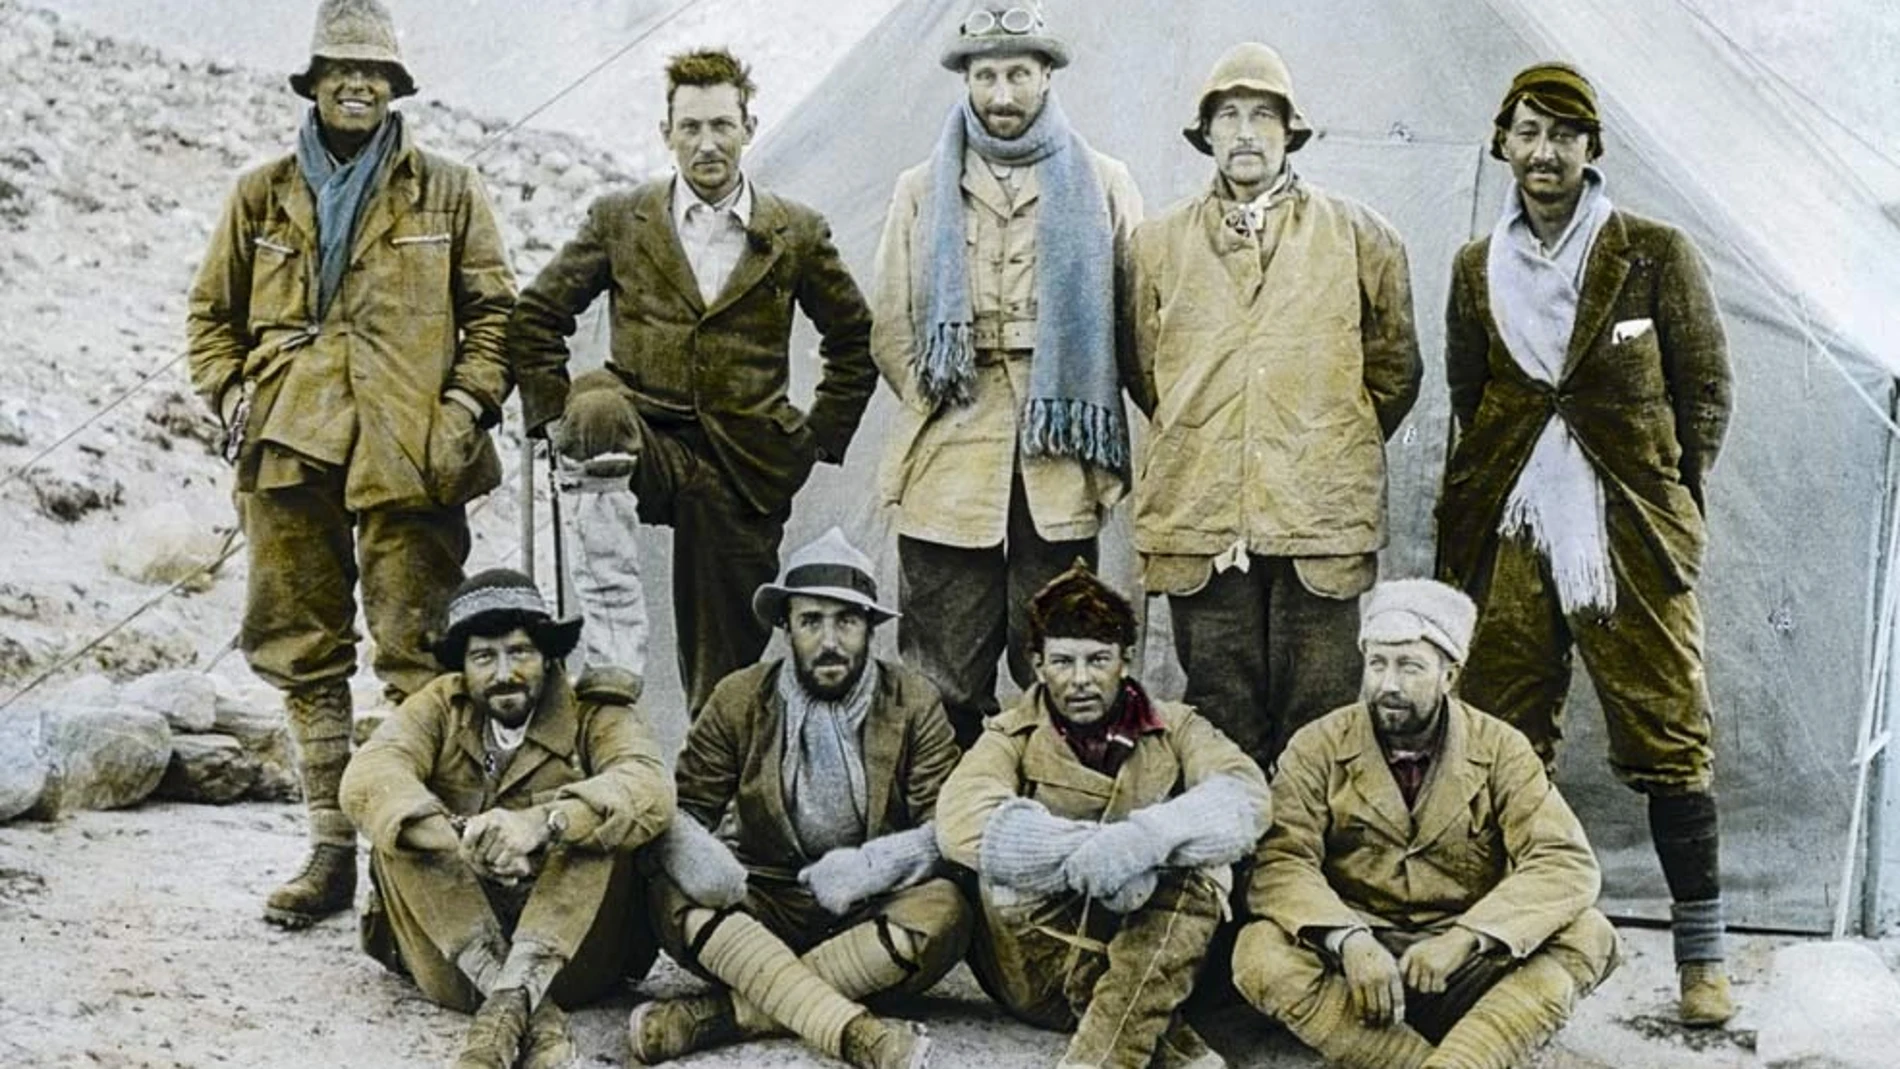 Salen a la luz las cartas de amor de un explorador que murió intentado escalar el Everest